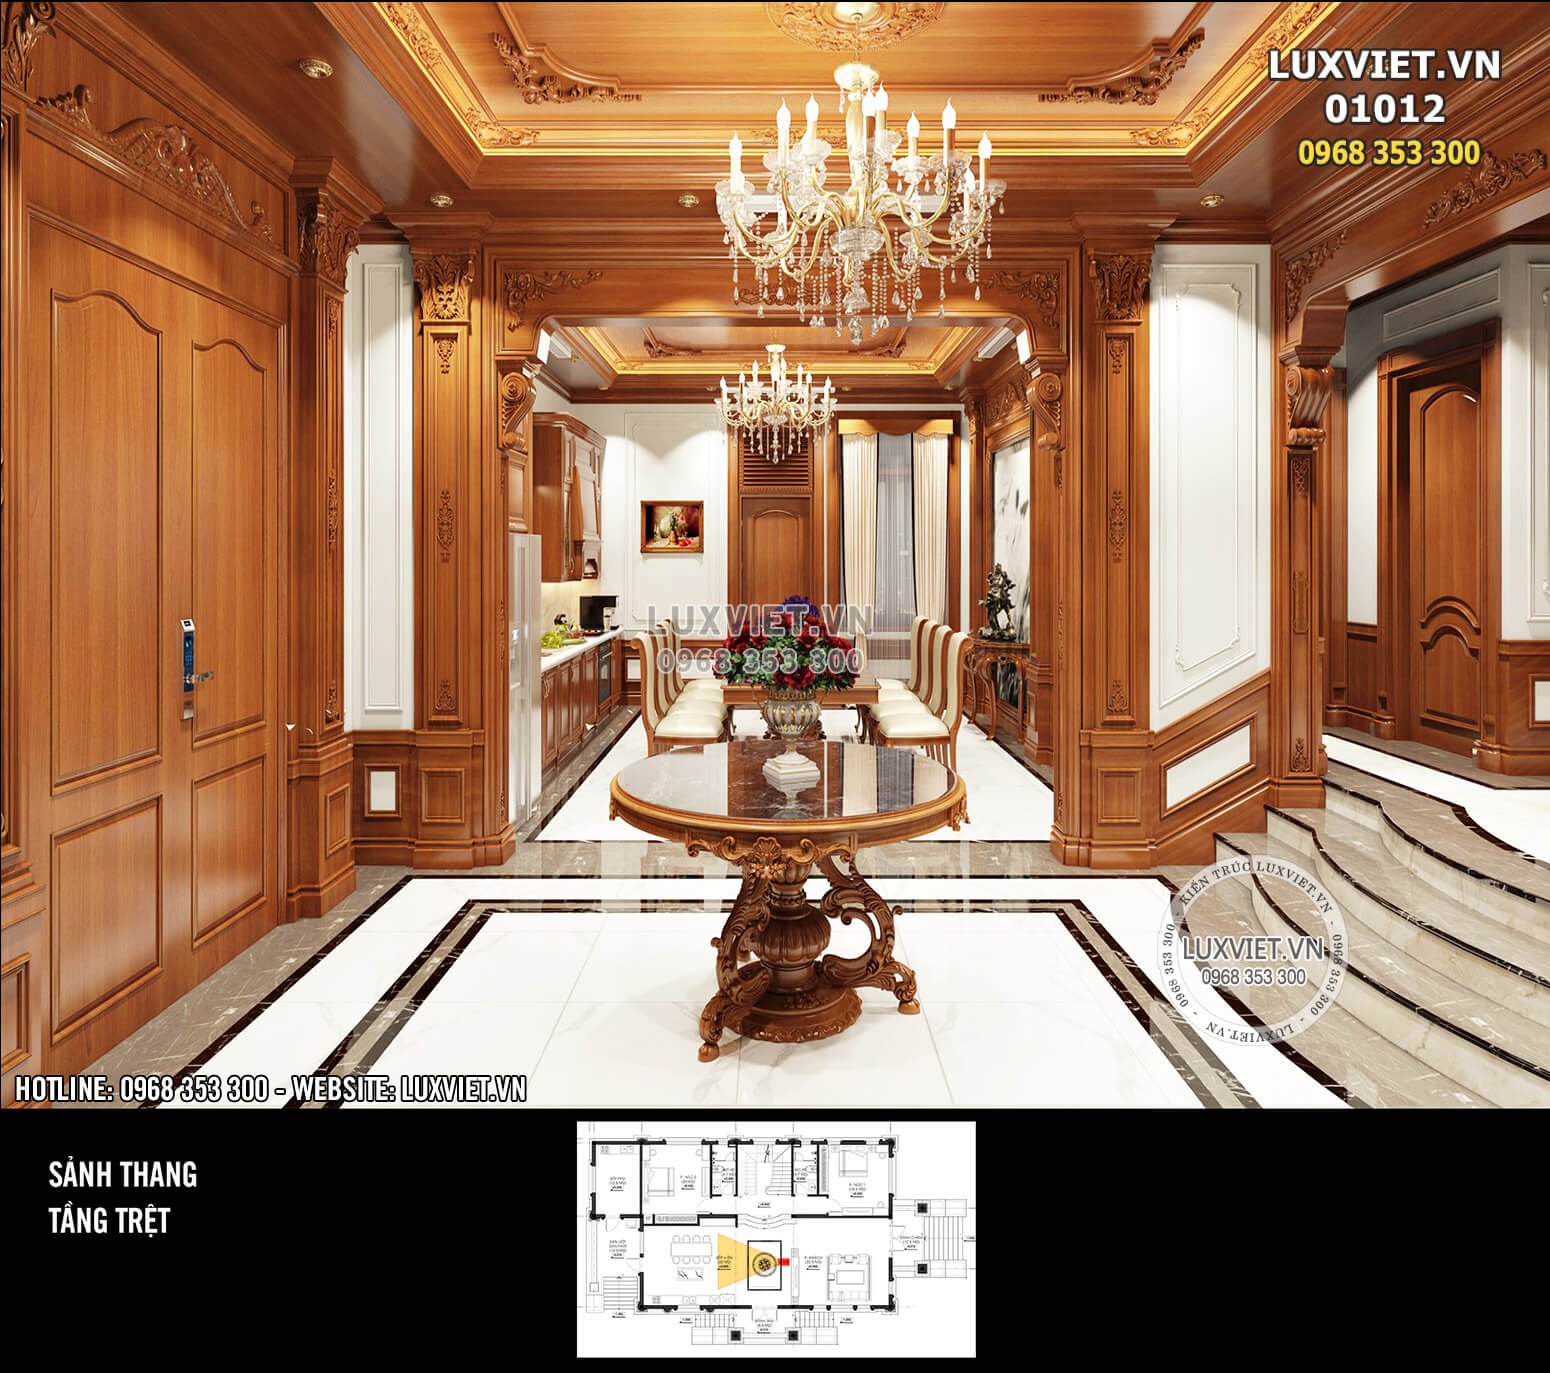 Hình ảnh: Tổng quan không gian phòng bếp được thiết kế chủ đạo bằng chất liệu gỗ tân cổ điển